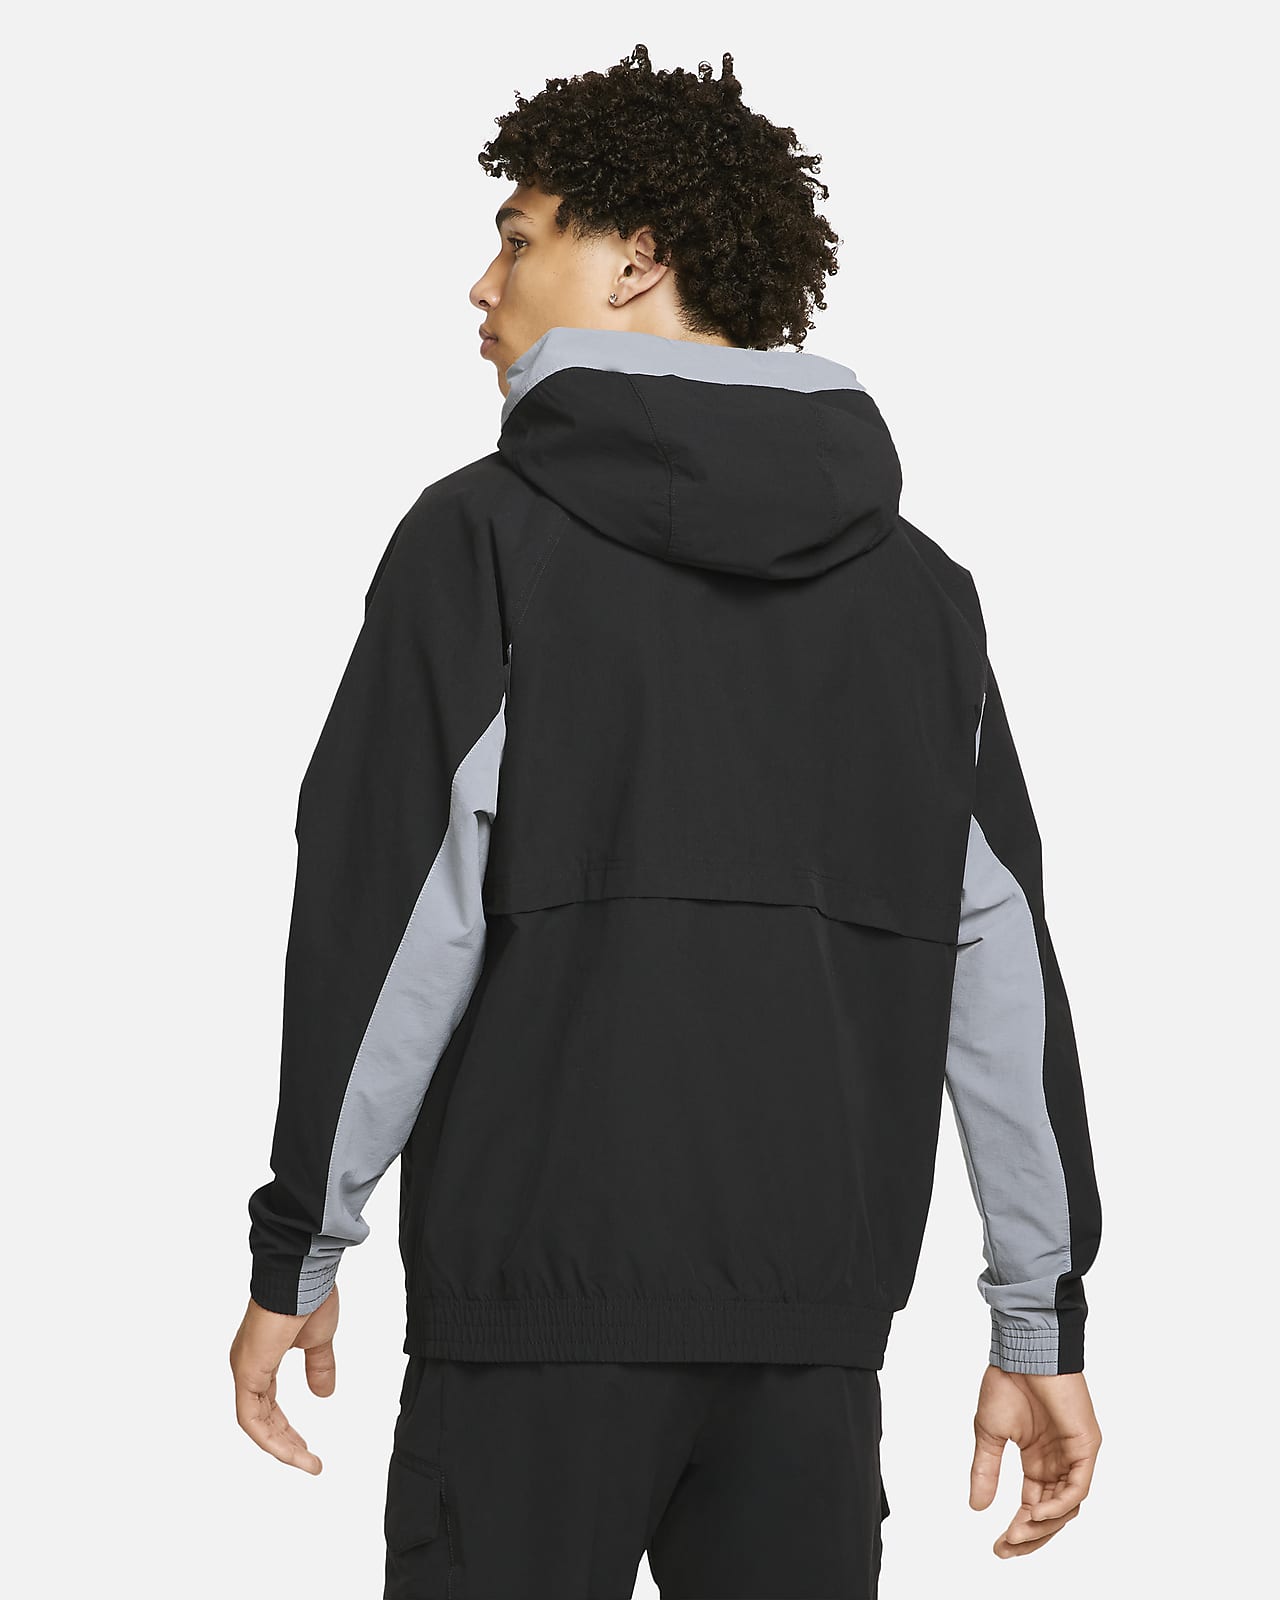 Nike Sportswear Air Max Men's Woven Jacket. Nike NZ